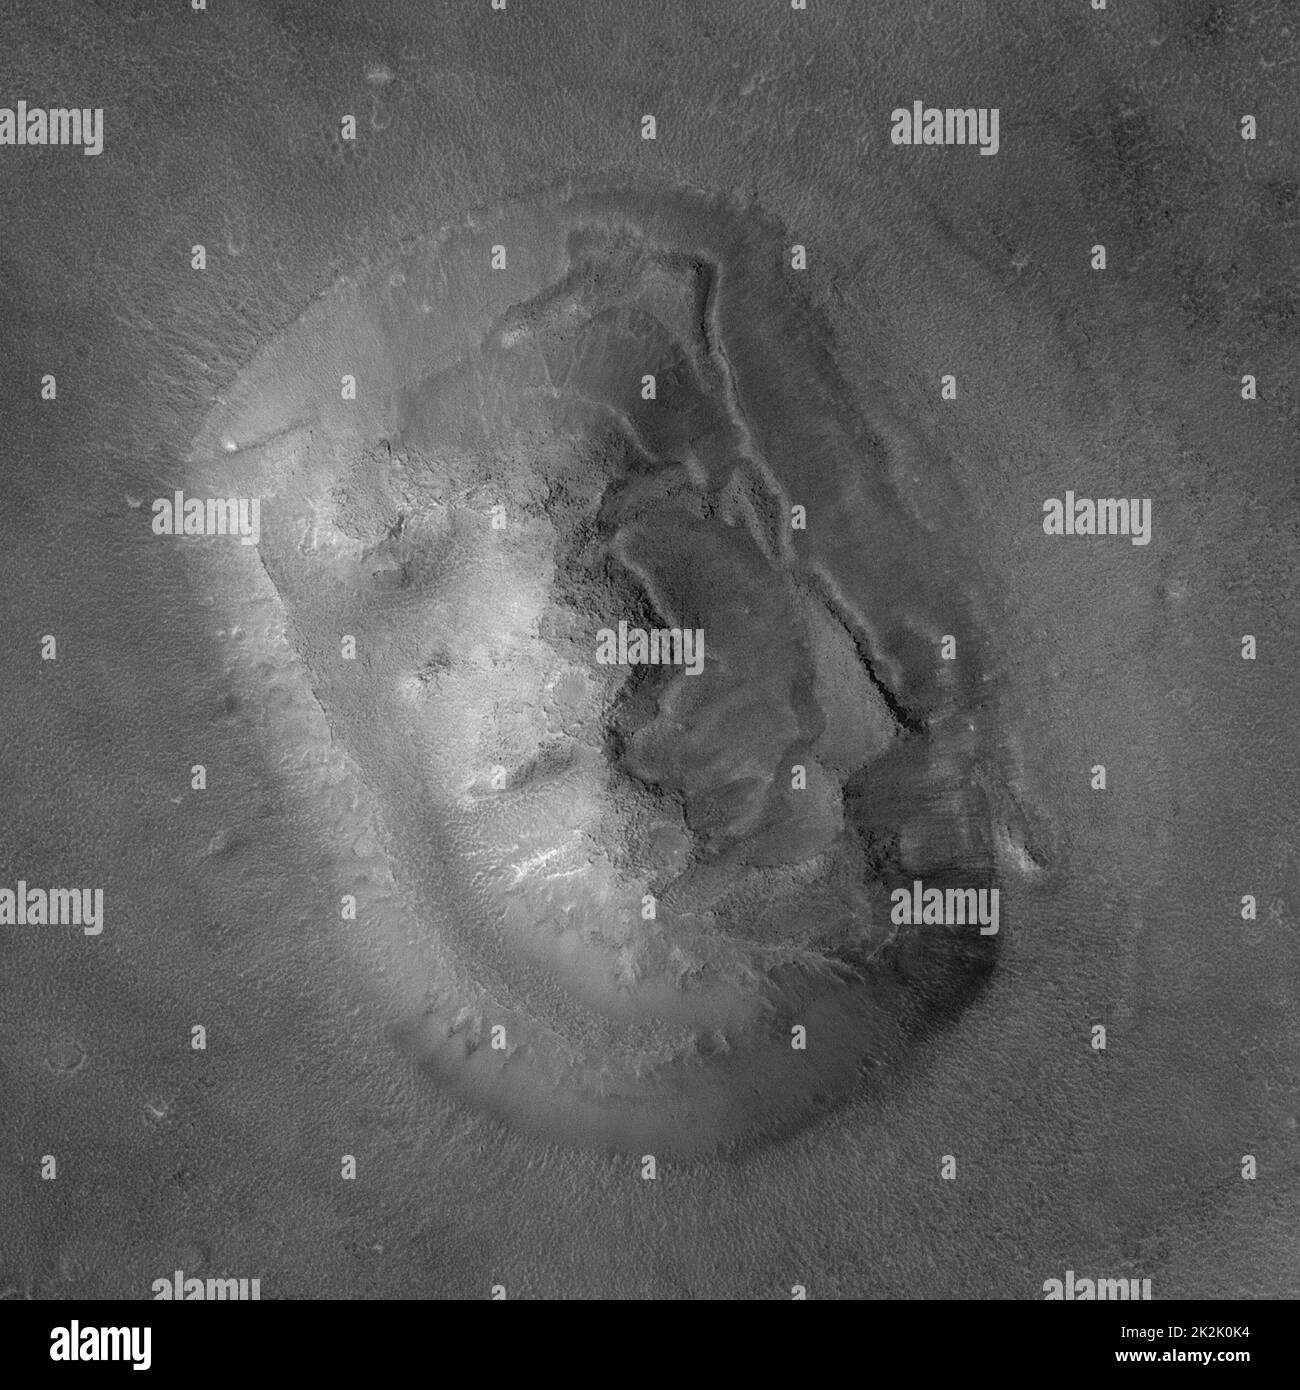 Cydonia è una regione di Marte che contiene diverse colline, che ha attirato l'attenzione perché una delle colline assomiglia a un volto. 2001 Foto Stock